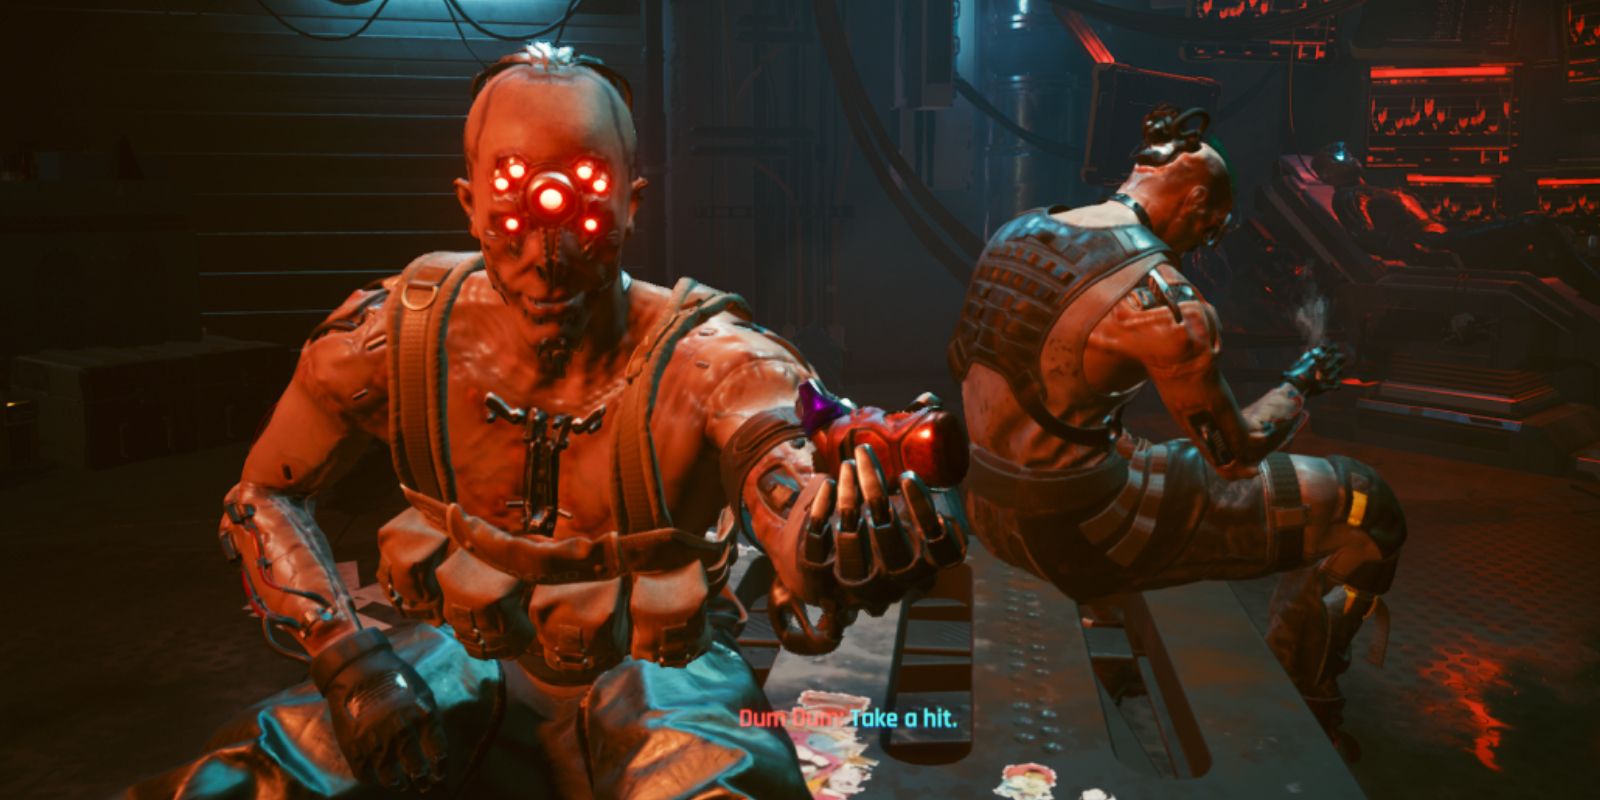 Cyberpunk 2077 NPC Dum Dum holds an inhaler out, offering the player to take a hit.